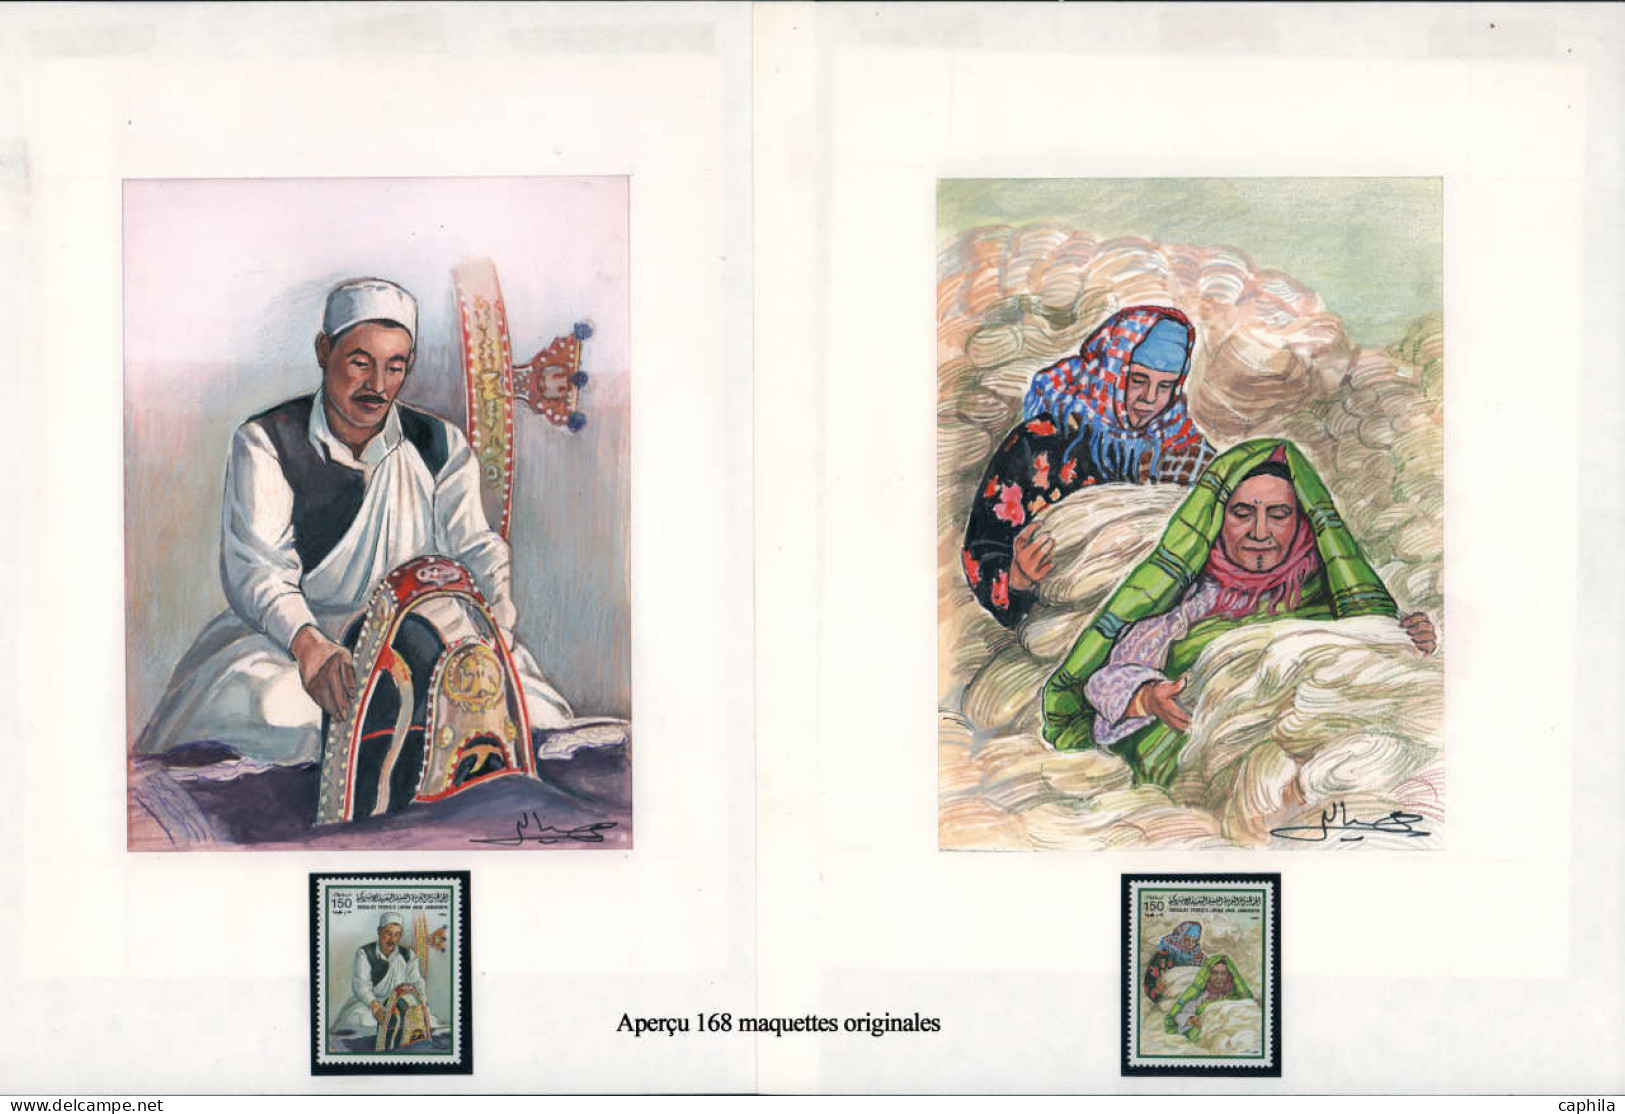 LIBYE Epreuves d'Artiste MAQ - Exceptionnelle collection de 168 maquettes originales, nombreux thématiques: Chevaux, fru